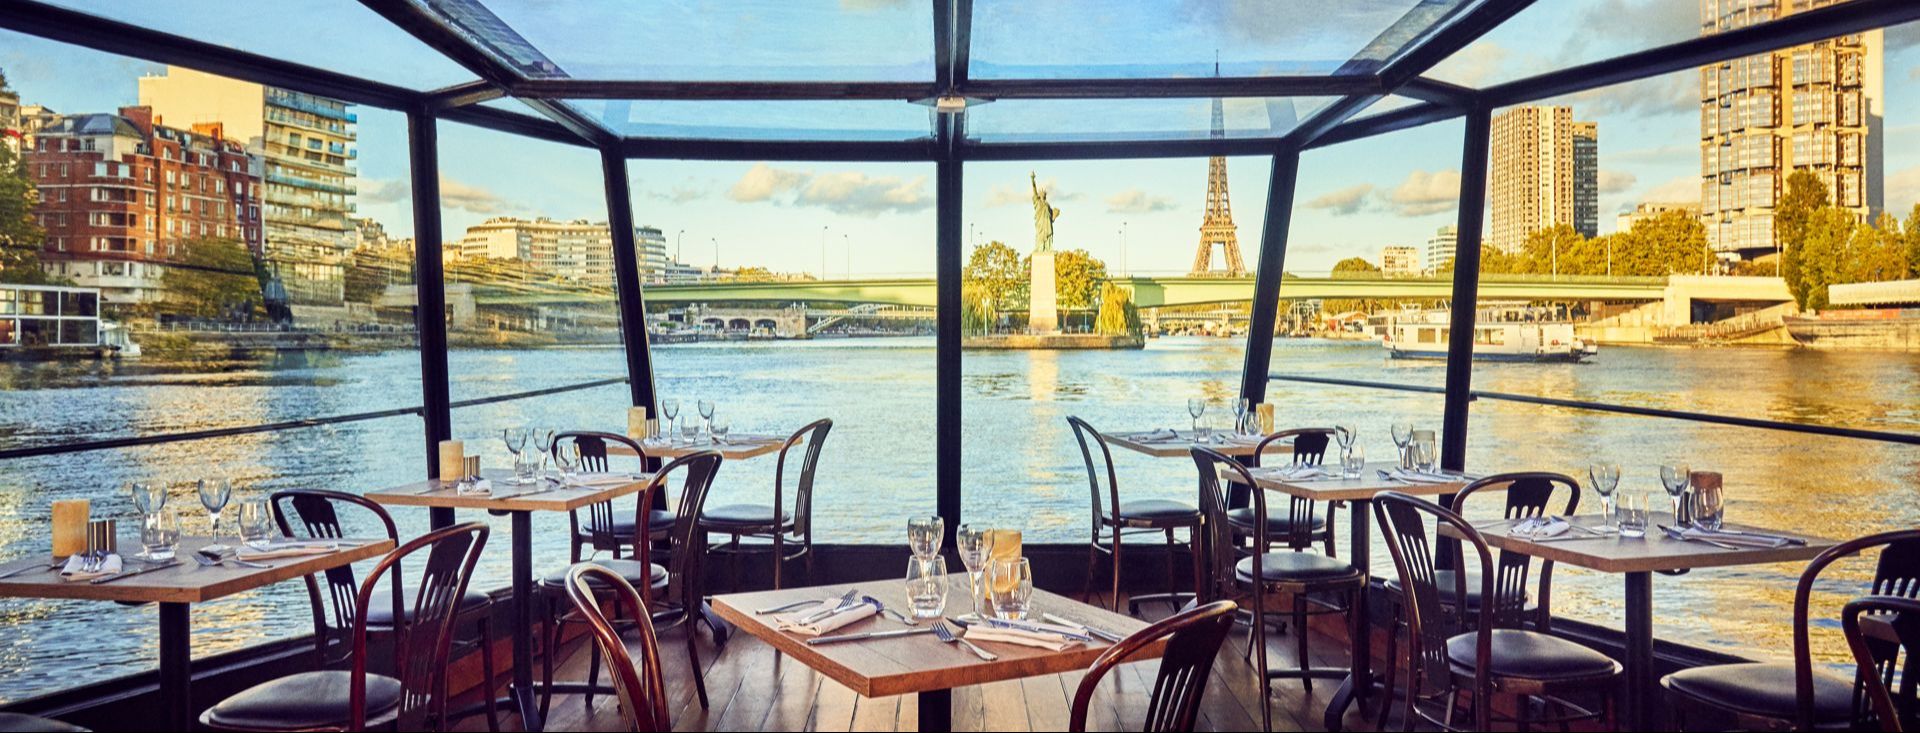 Déjeuner-Croisière Romantique sur la Seine, Table en baie vitrée, Boissons incluses